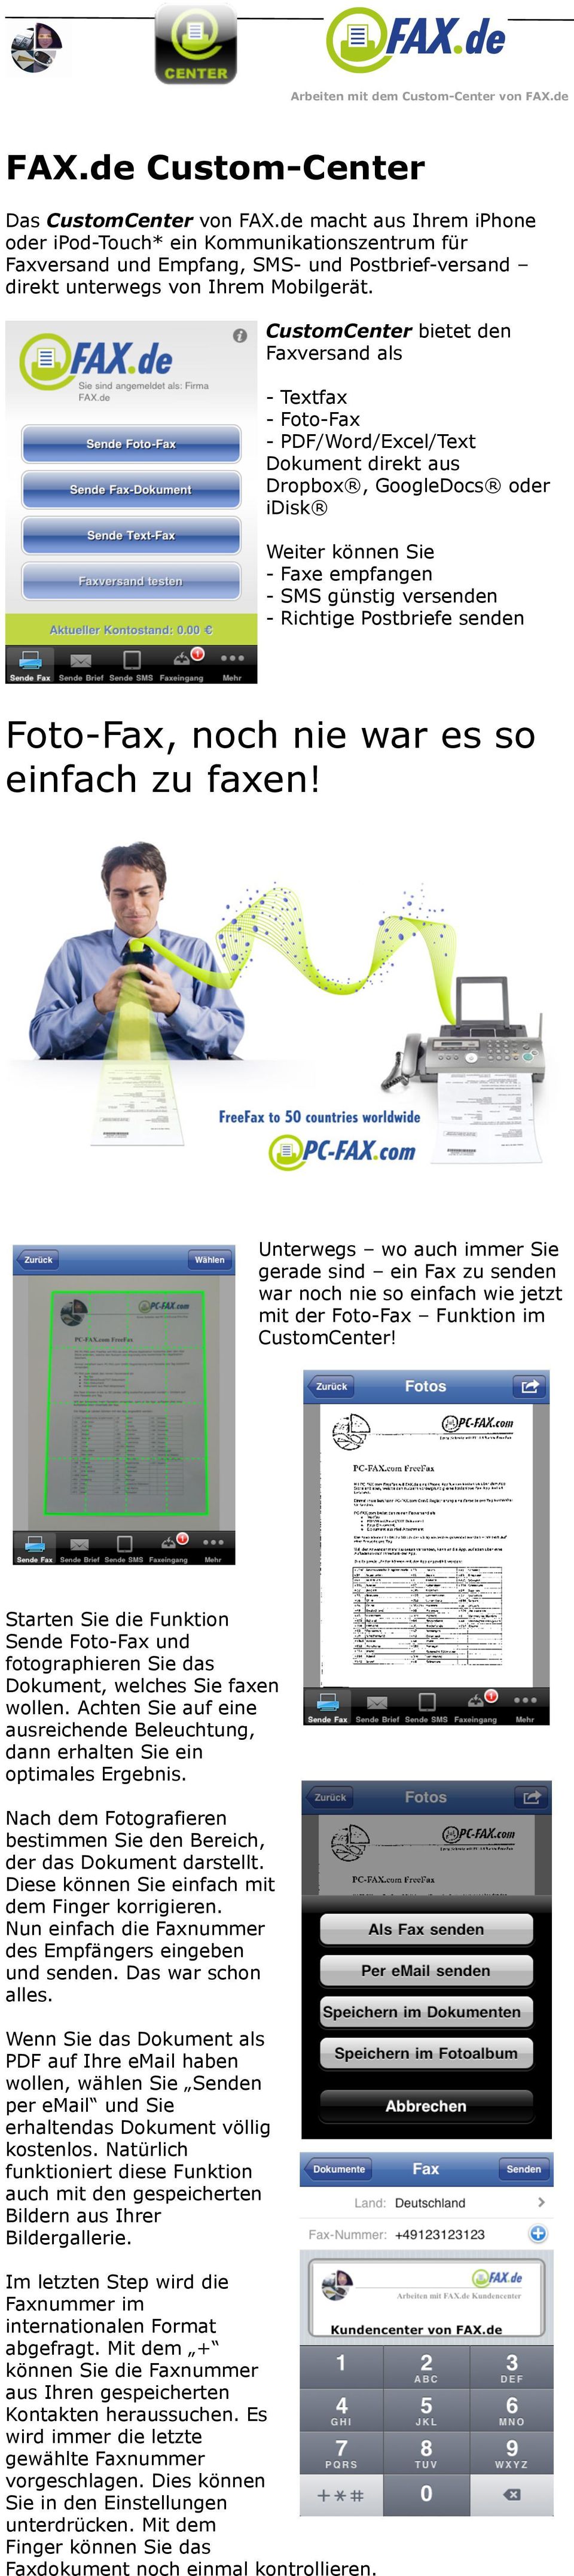 CustomCenter bietet den Faxversand als - Textfax - Foto-Fax - PDF/Word/Excel/Text Dokument direkt aus Dropbox, GoogleDocs oder idisk Weiter können Sie - Faxe empfangen - SMS günstig versenden -